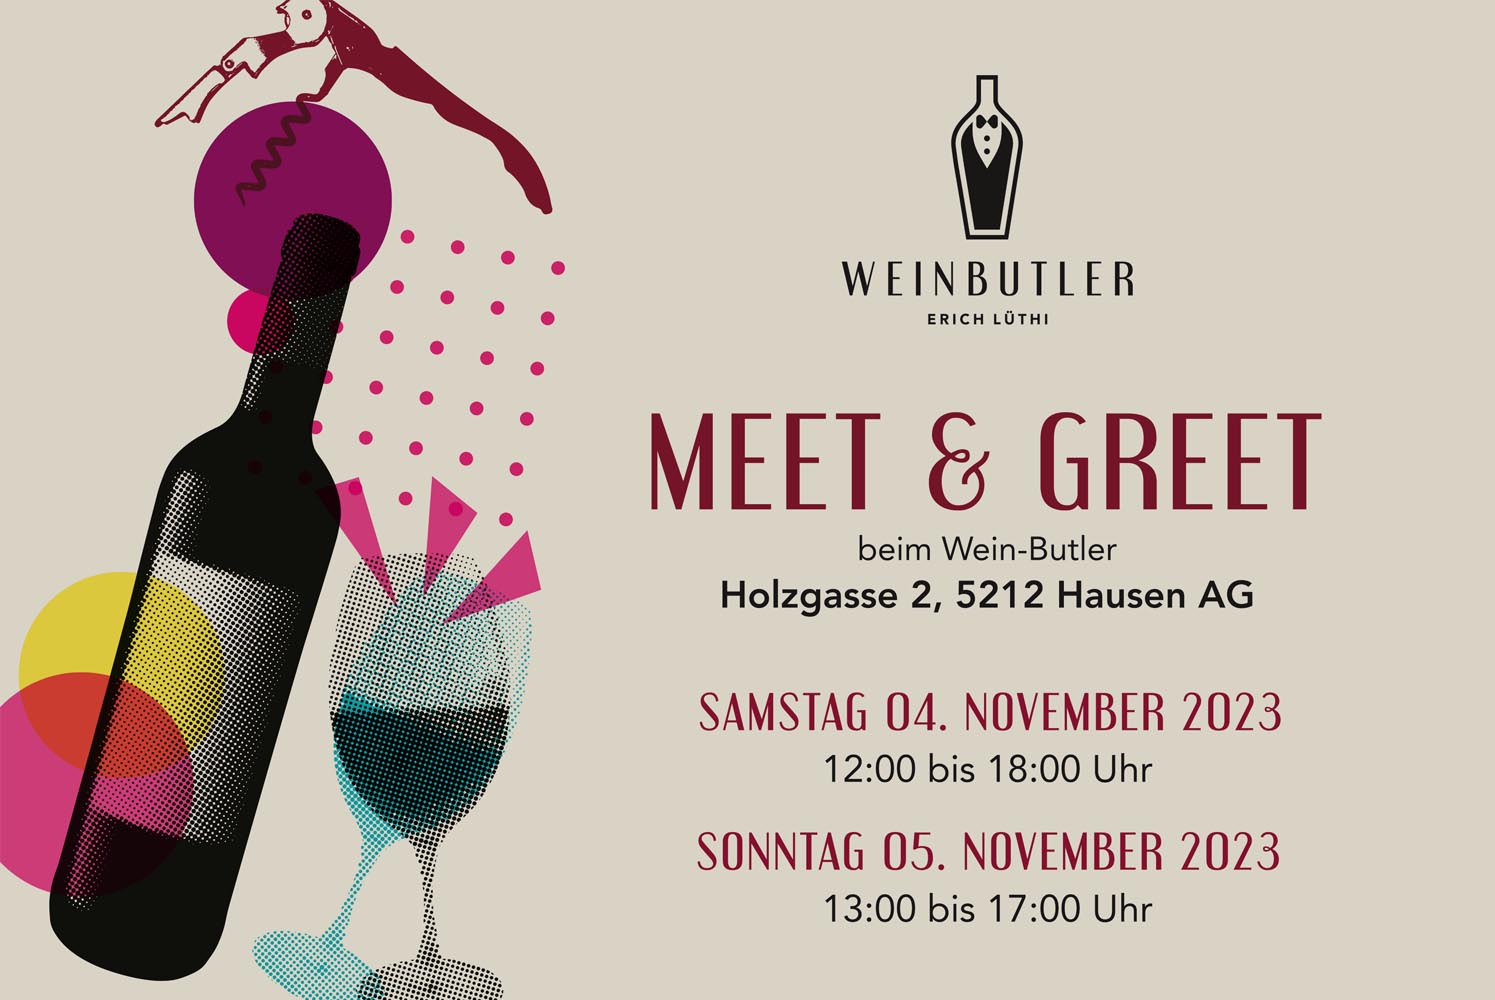 Meet & Greet 2023 chez Wein-Butler - Meet & Greet 2023 chez Wein-Butler